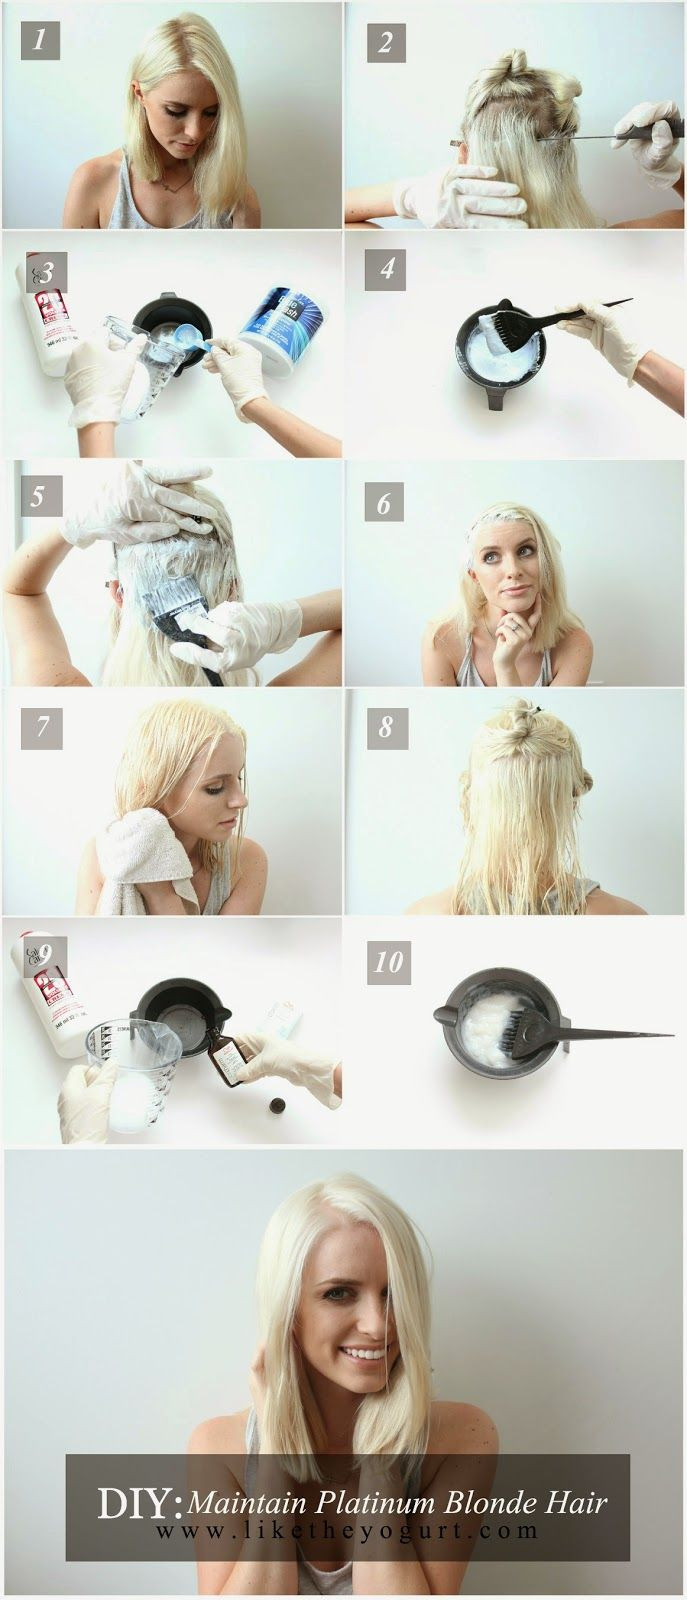 DIY Hair Bleach
 DIY Maintaining Platinum Blonde Hair